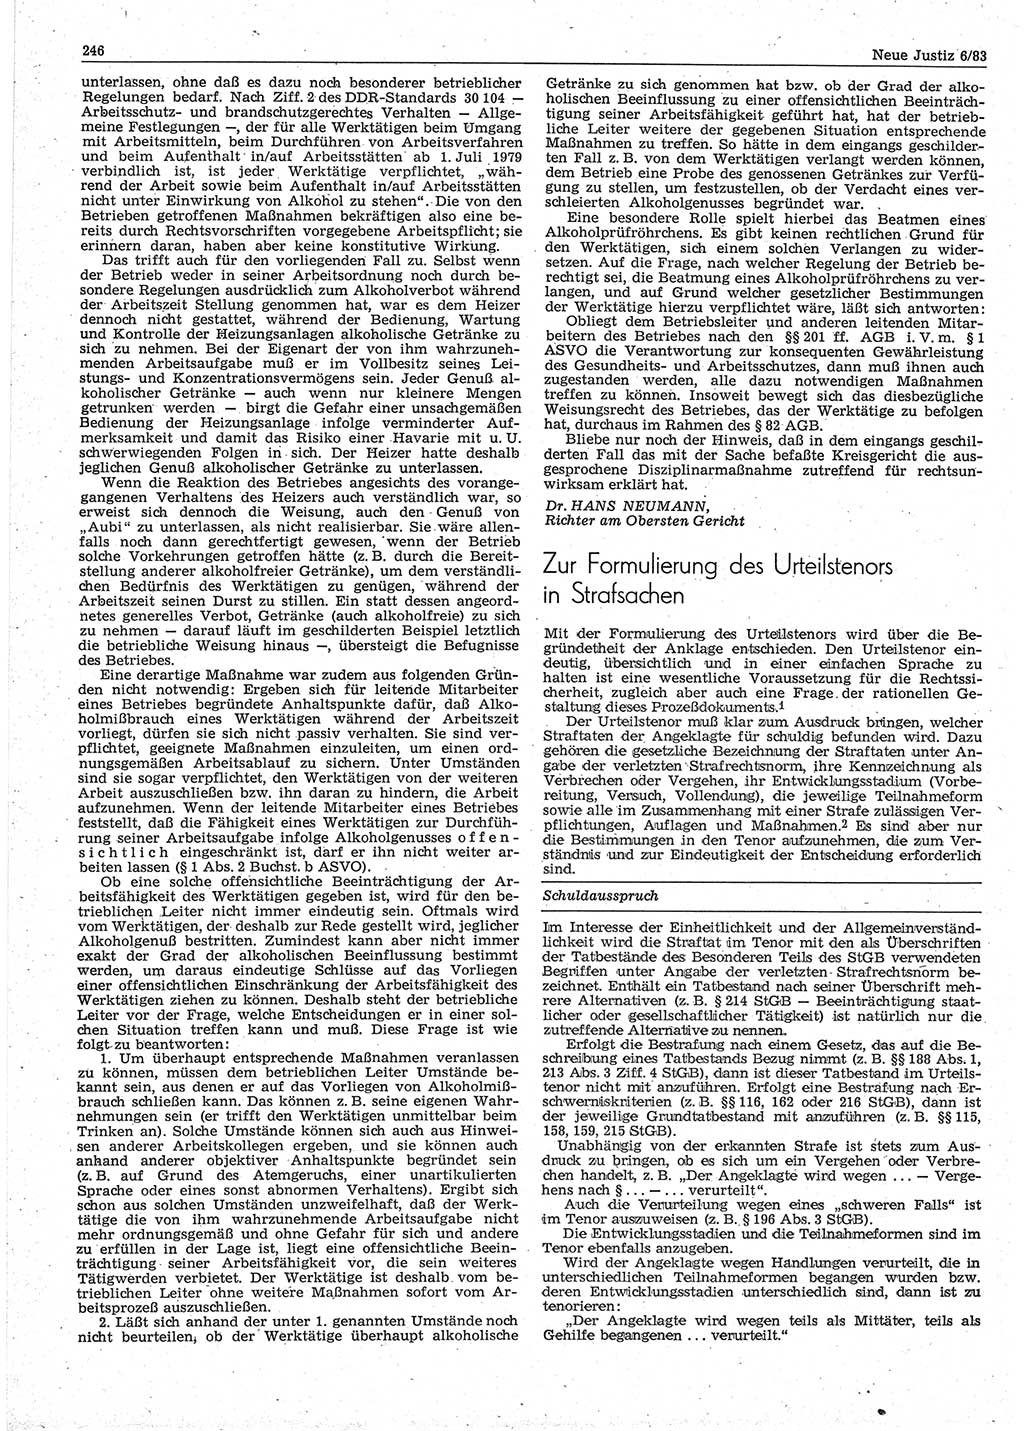 Neue Justiz (NJ), Zeitschrift für sozialistisches Recht und Gesetzlichkeit [Deutsche Demokratische Republik (DDR)], 37. Jahrgang 1983, Seite 246 (NJ DDR 1983, S. 246)